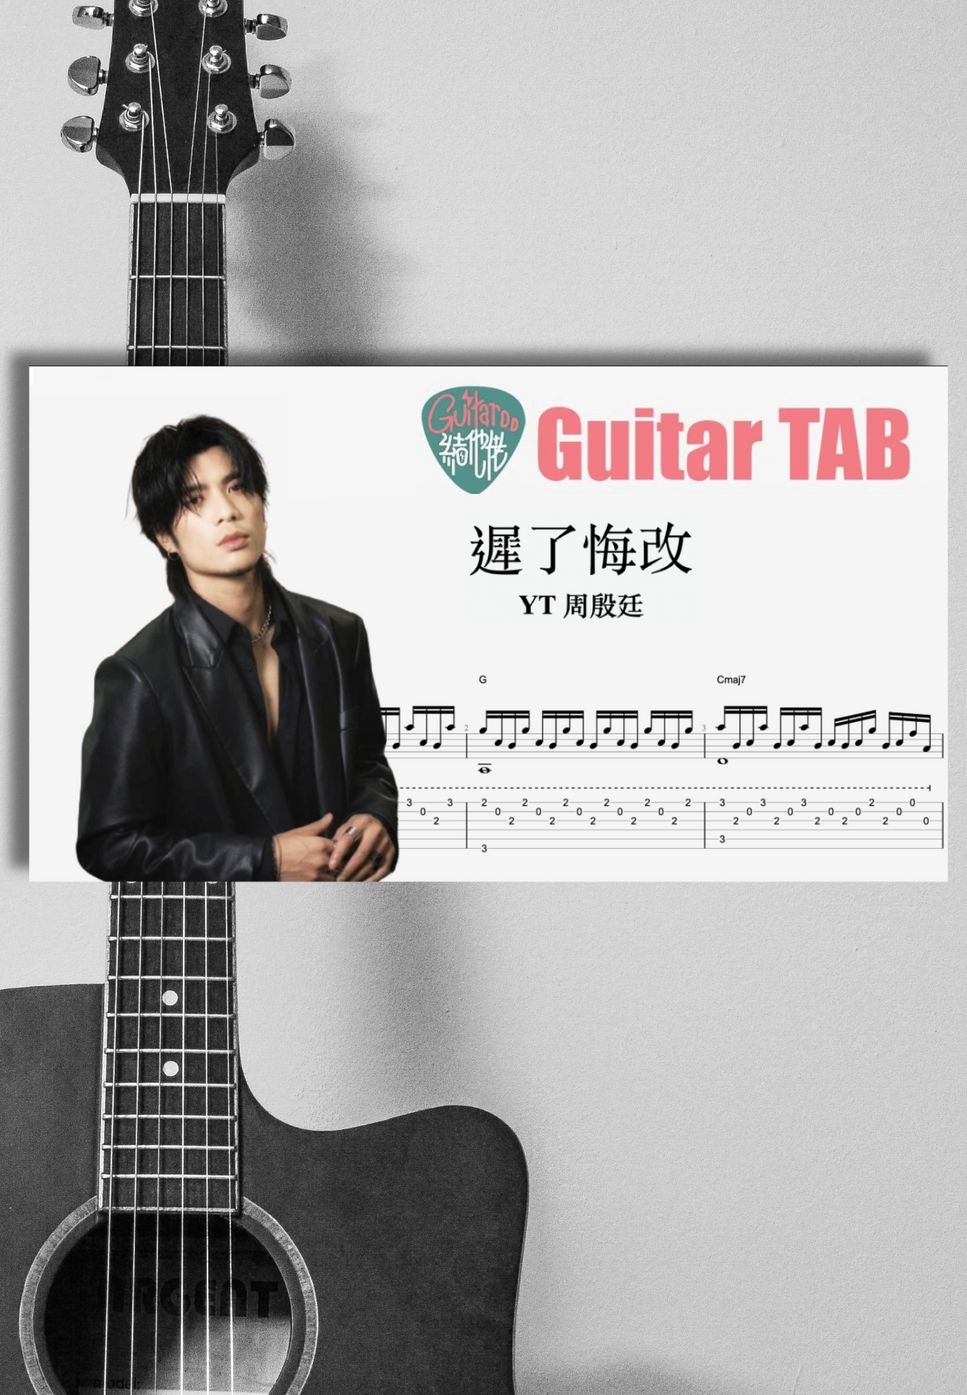 周殷廷 YT - 遲了悔改 by Guitaroohk